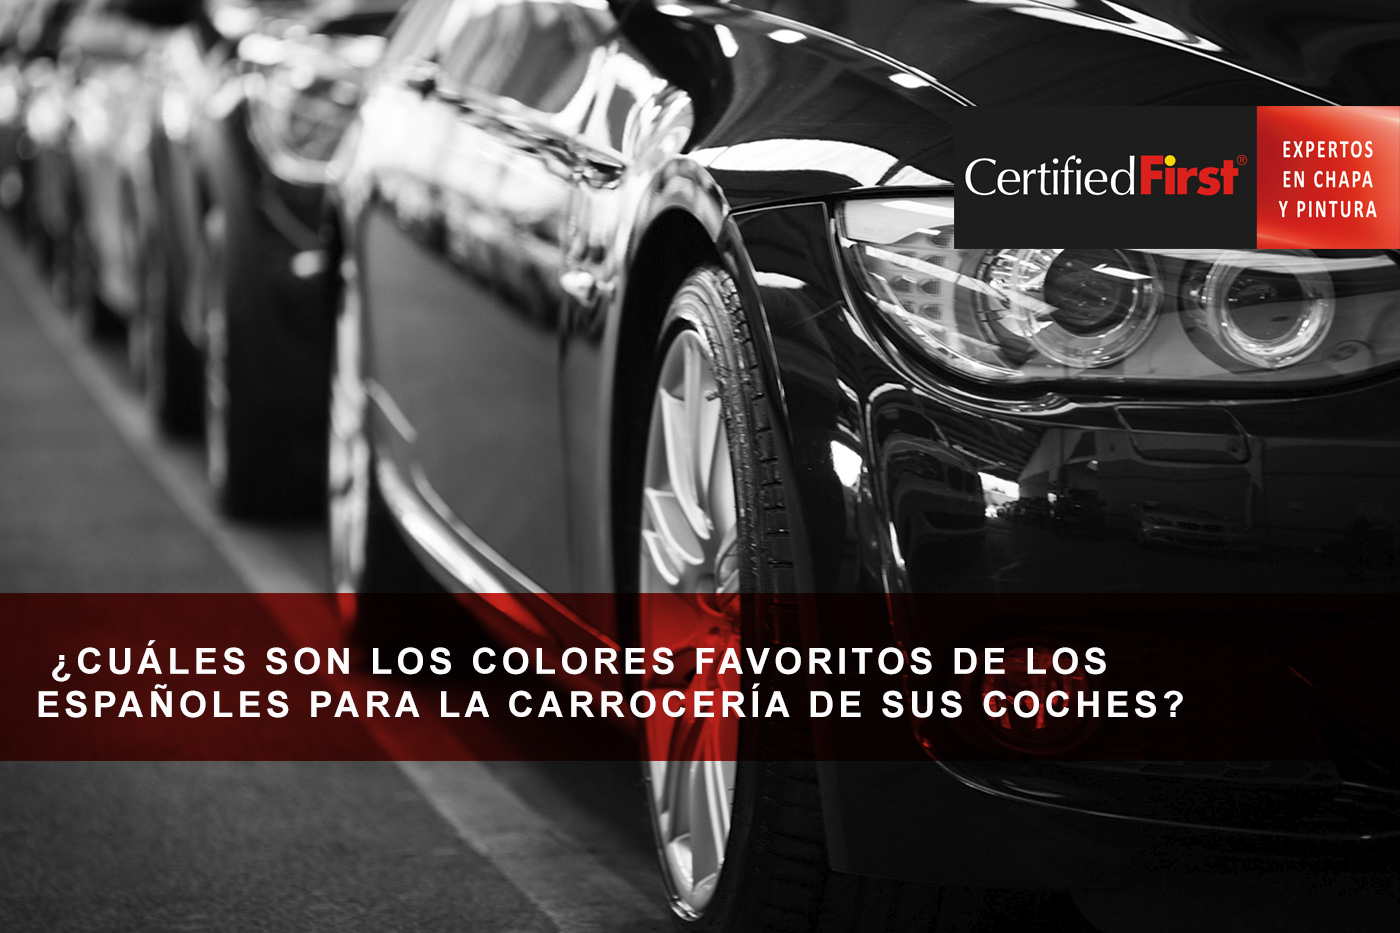  ¿Cuáles son los colores favoritos de los españoles para la carrocería de sus coches?